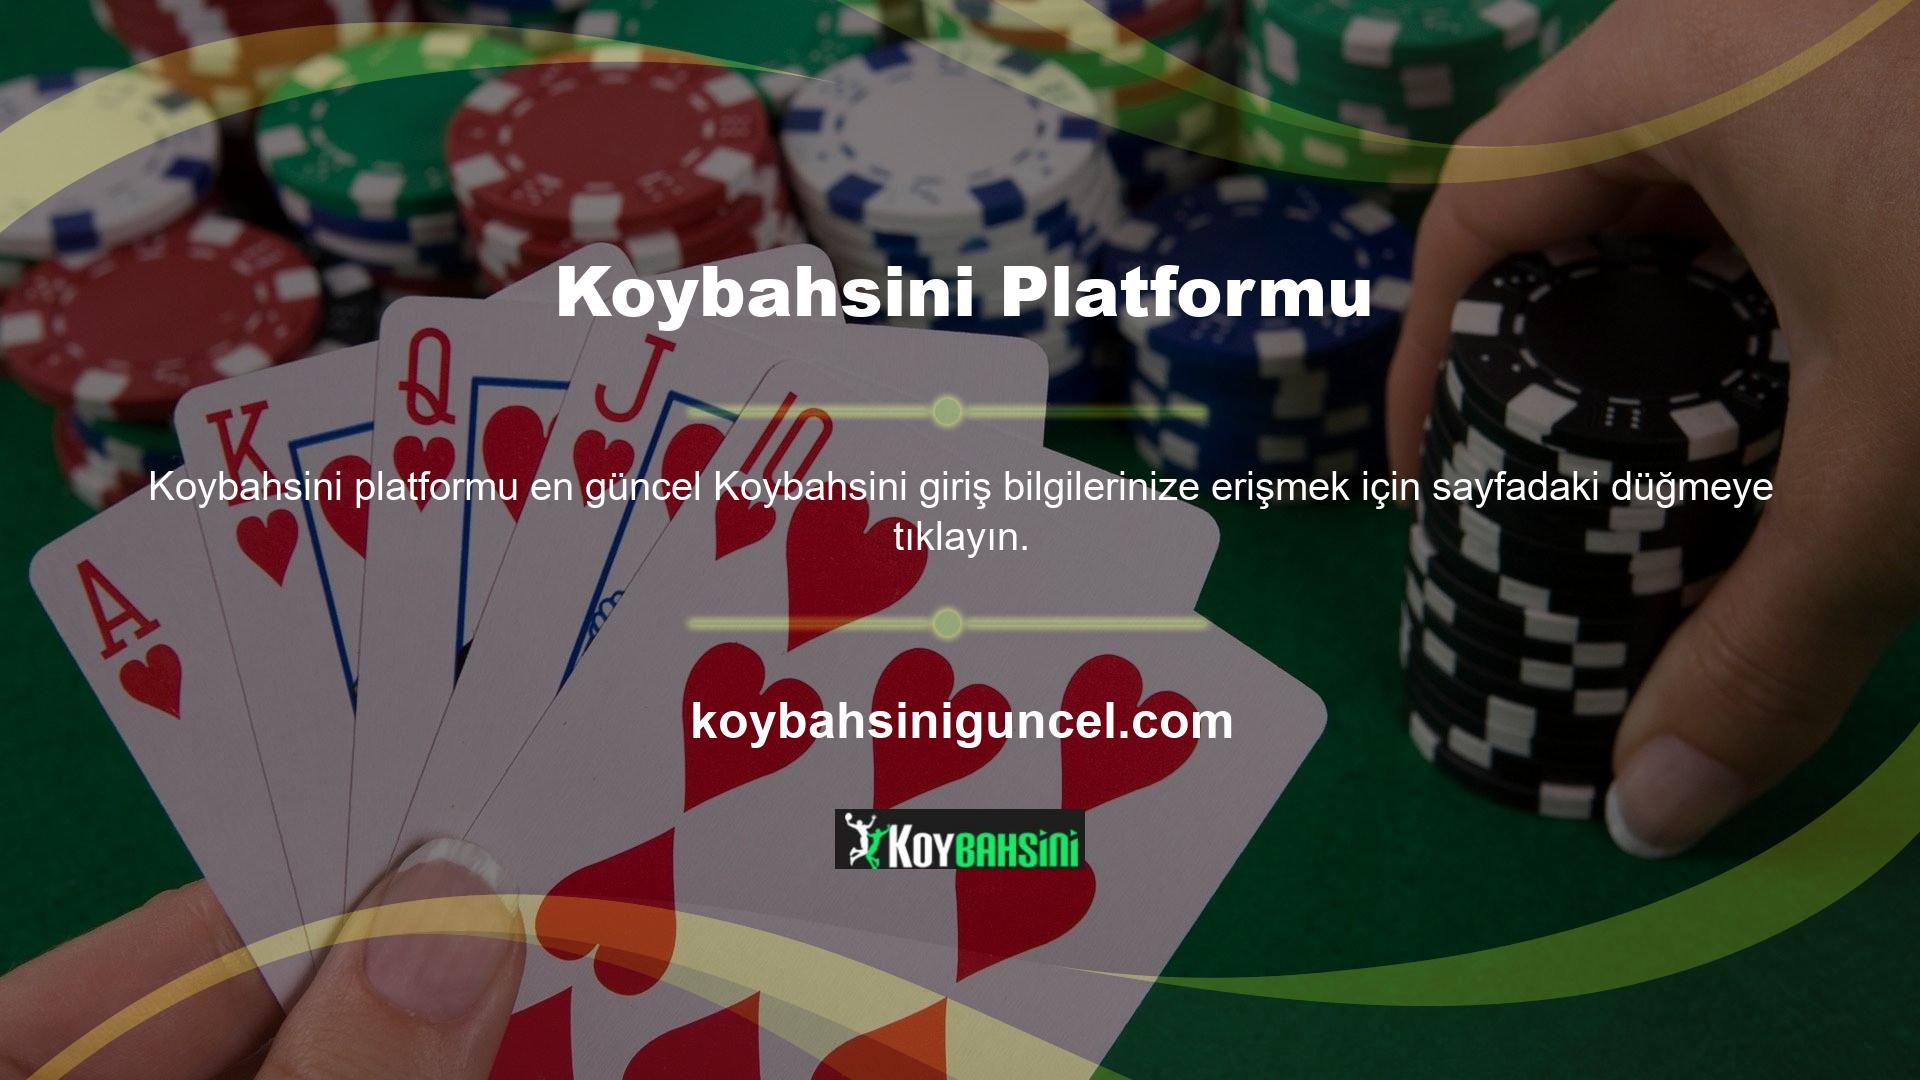 Önde gelen bir oyun sitesi olan Koybahsini, oyuncular tarafından oldukça tercih edilen casino ve oyun hizmetleri sunmaktadır